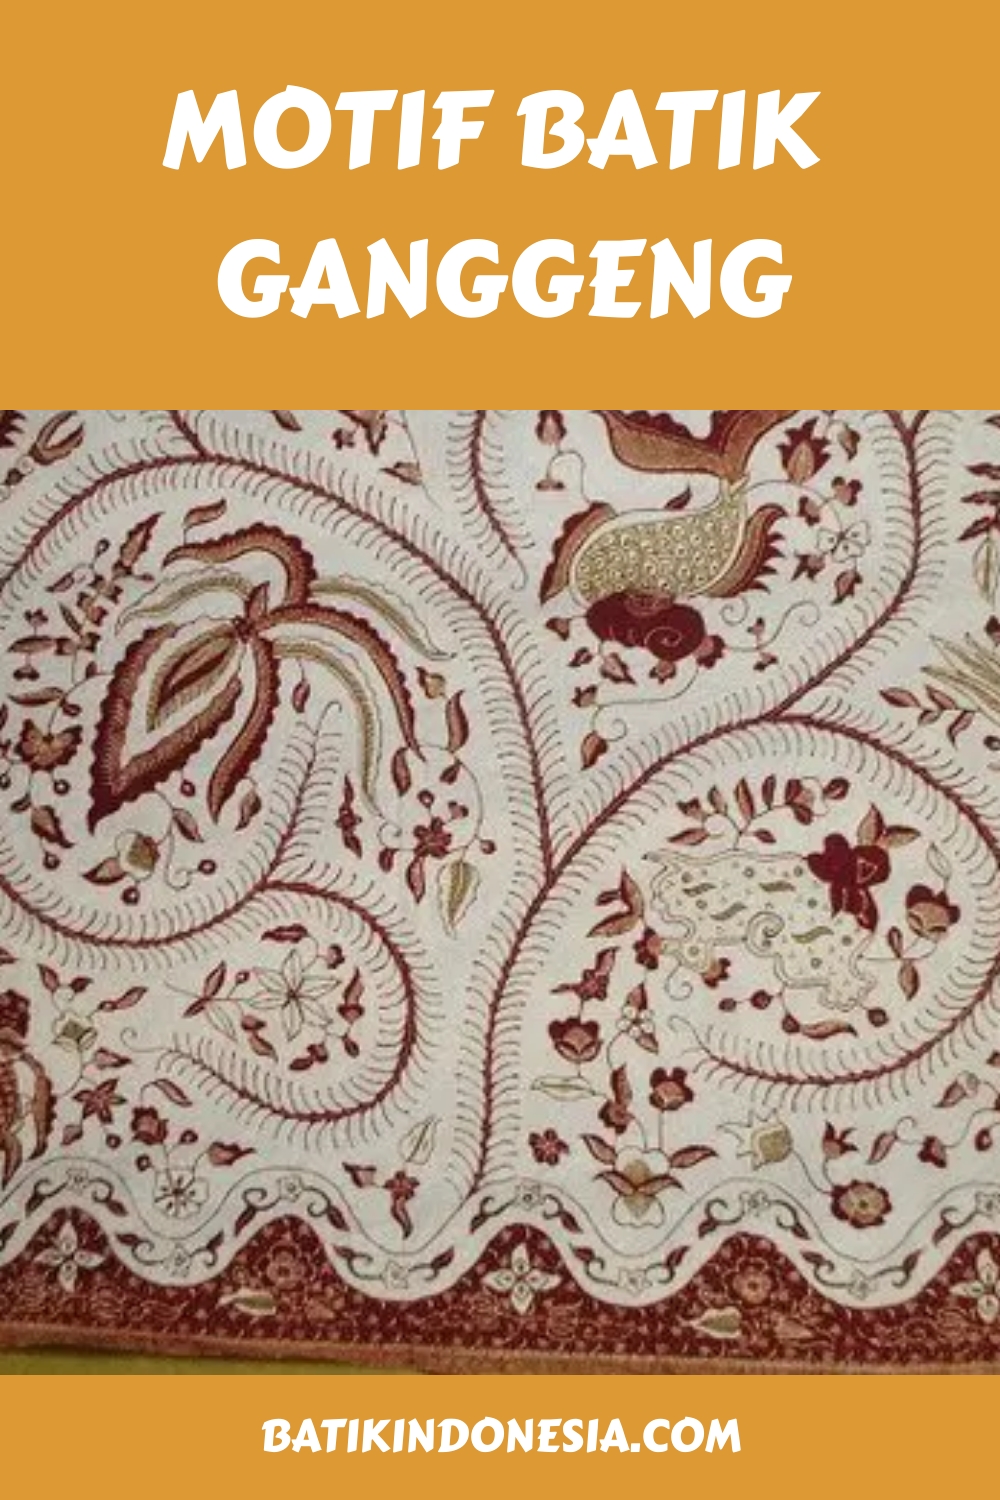 Motif Batik Ganggeng generated pin 1886